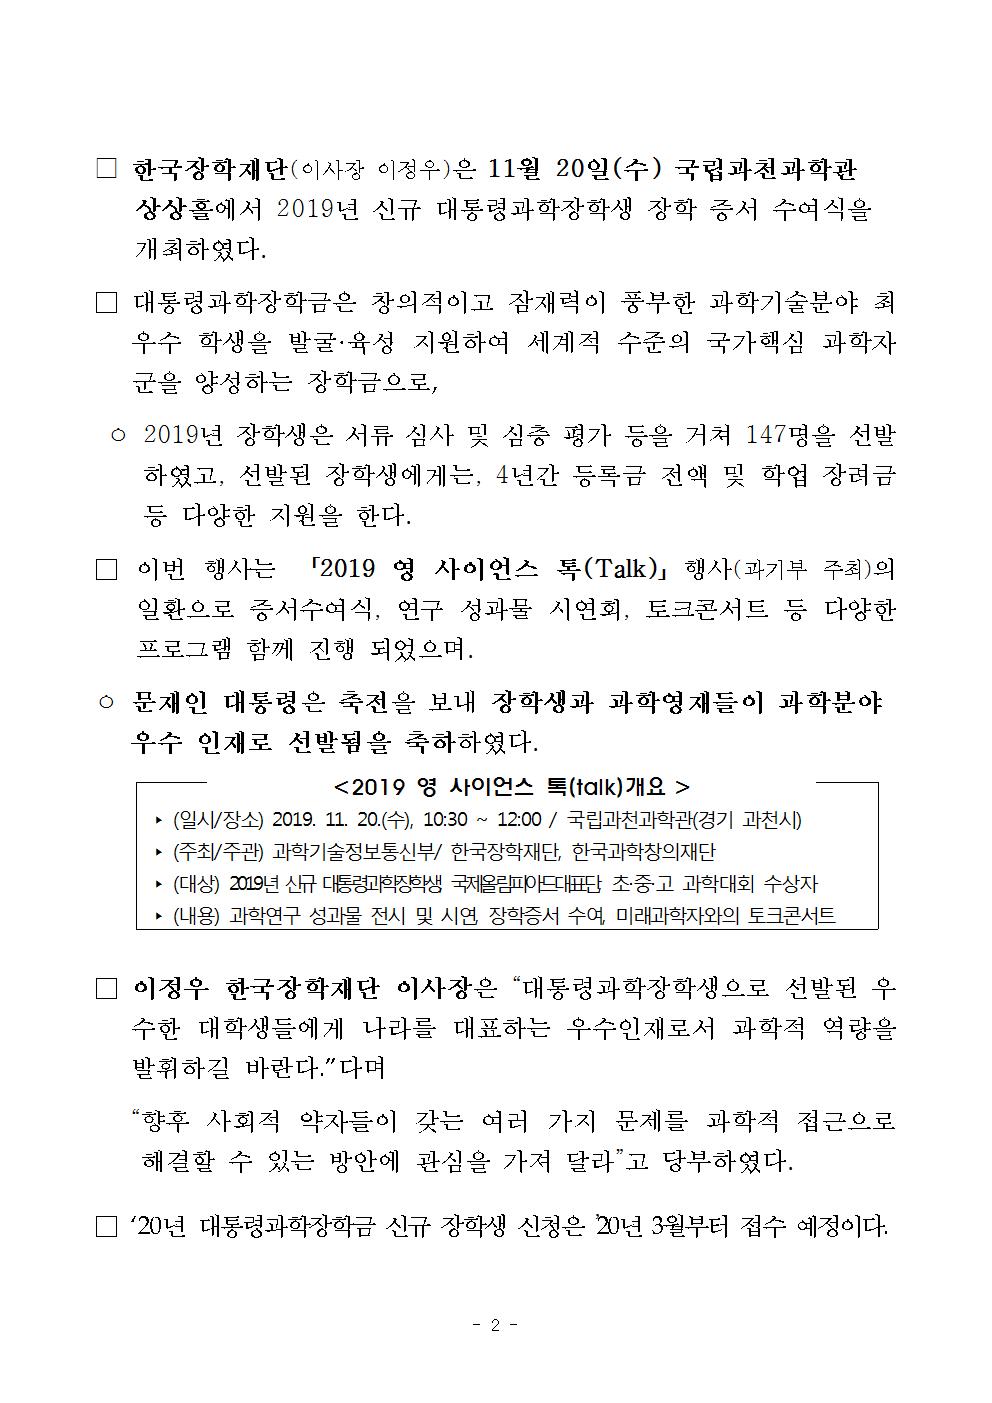 11-20(수)[보도자료] 한국장학재단, 대통령과학장학생 증서 수여식 개최002.jpg